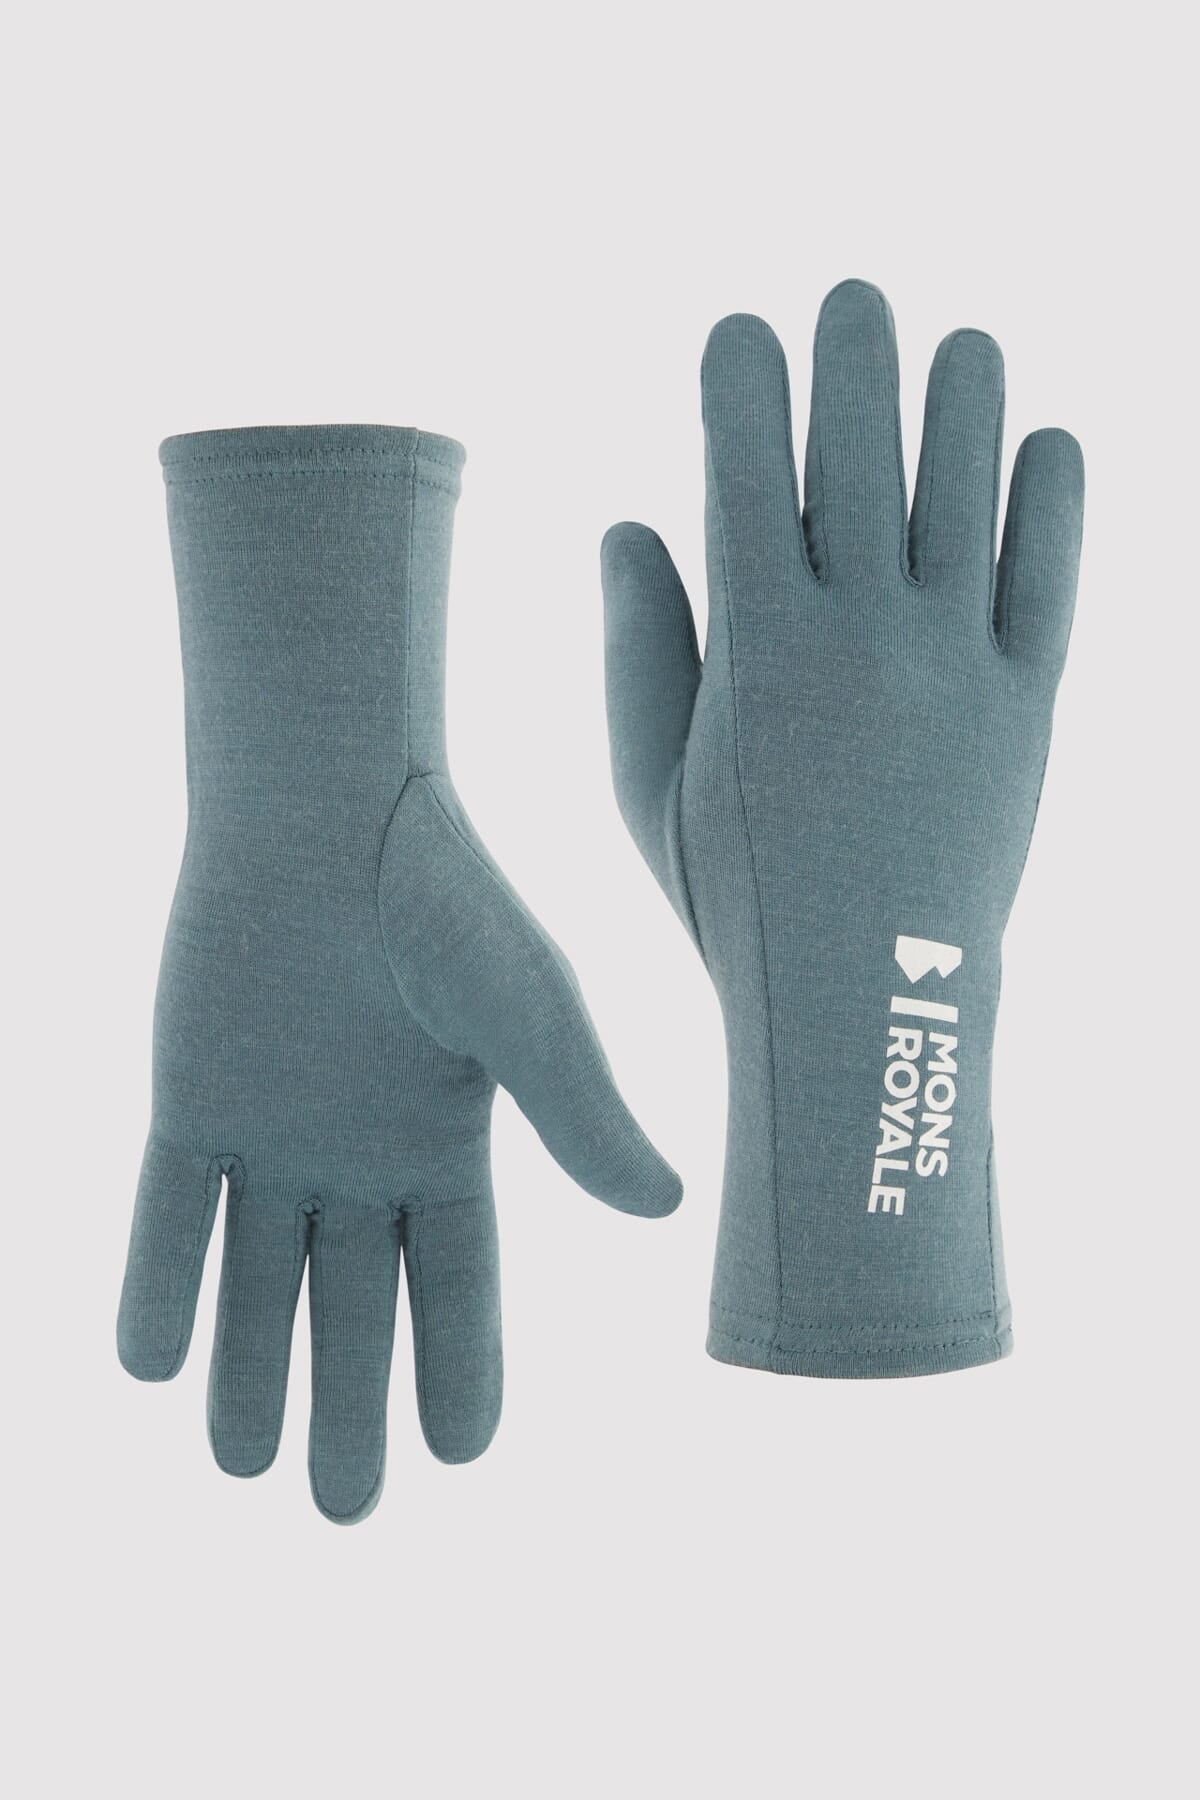 Olympus Merino Glove Liner